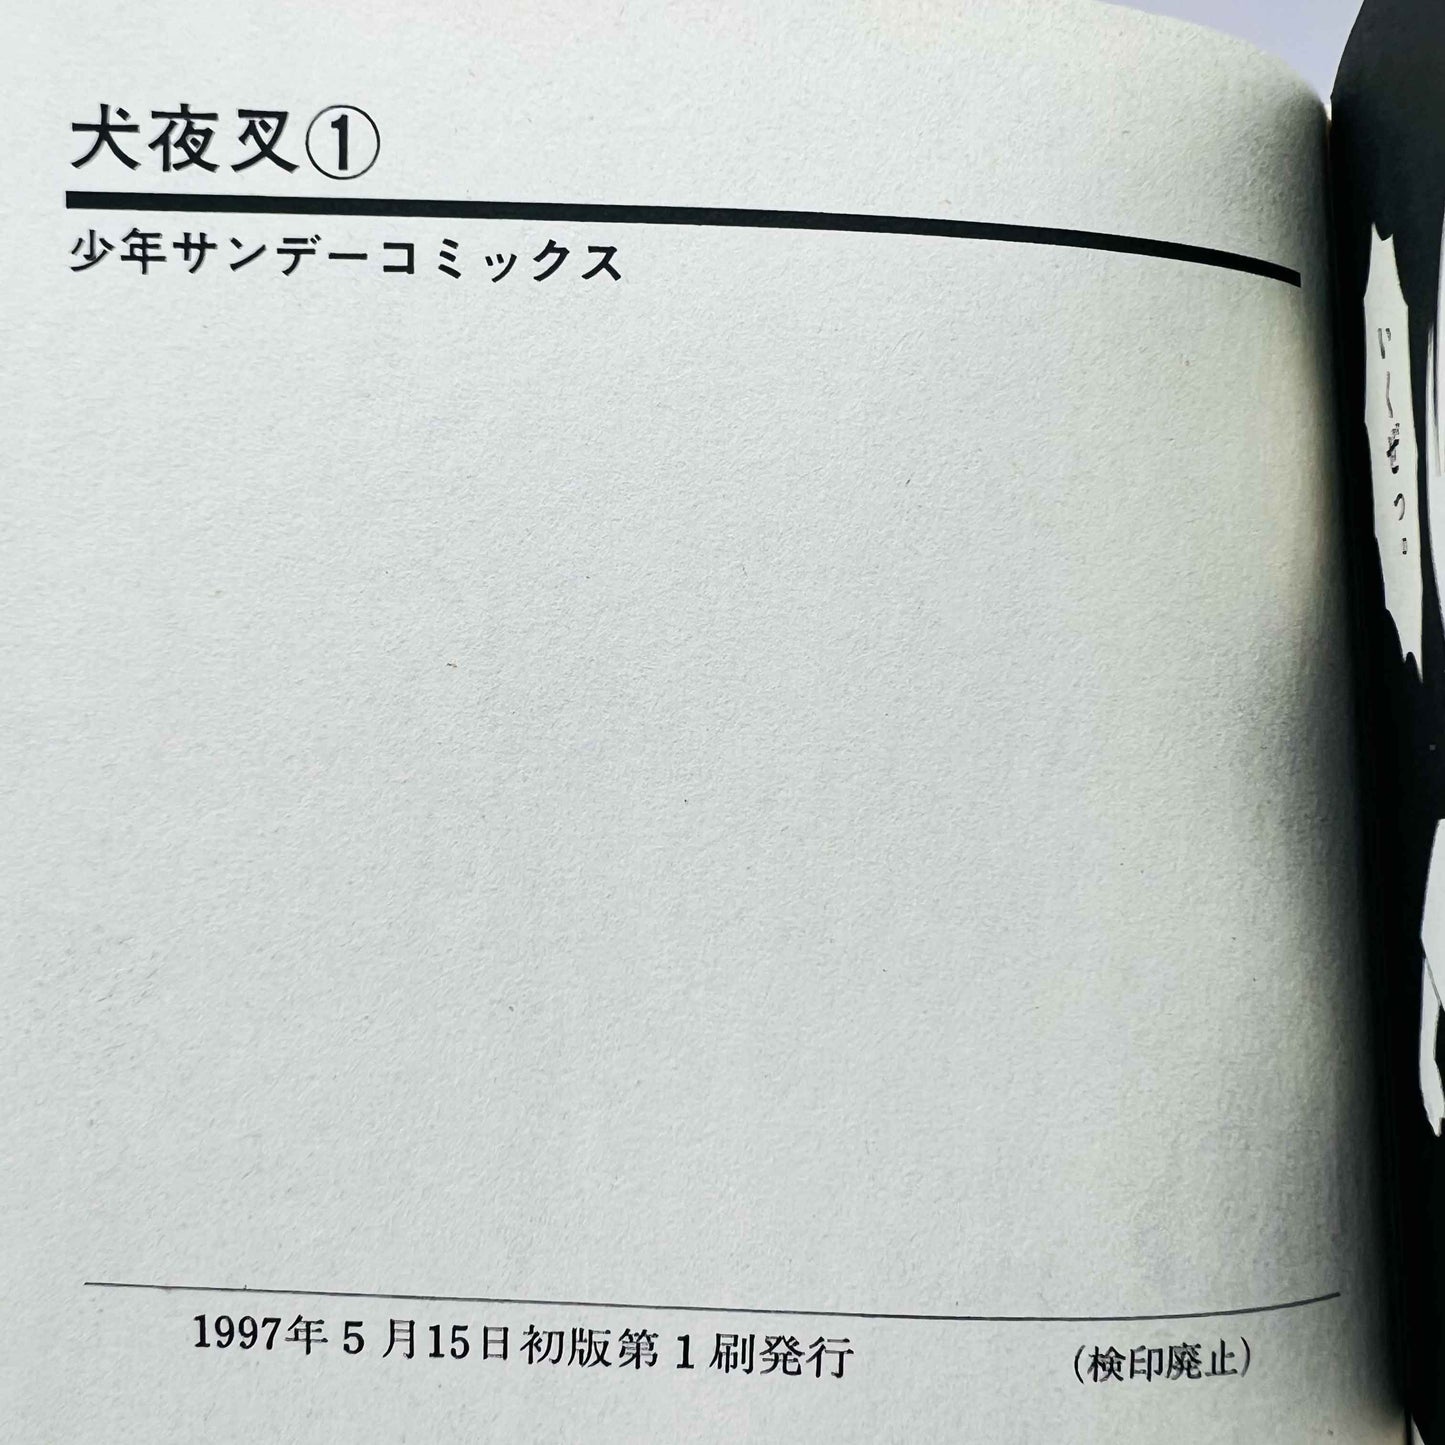 Inuyasha - Volume 01 - 1stPrint.net - 1st First Print Edition Manga Store - M-INU-01-005